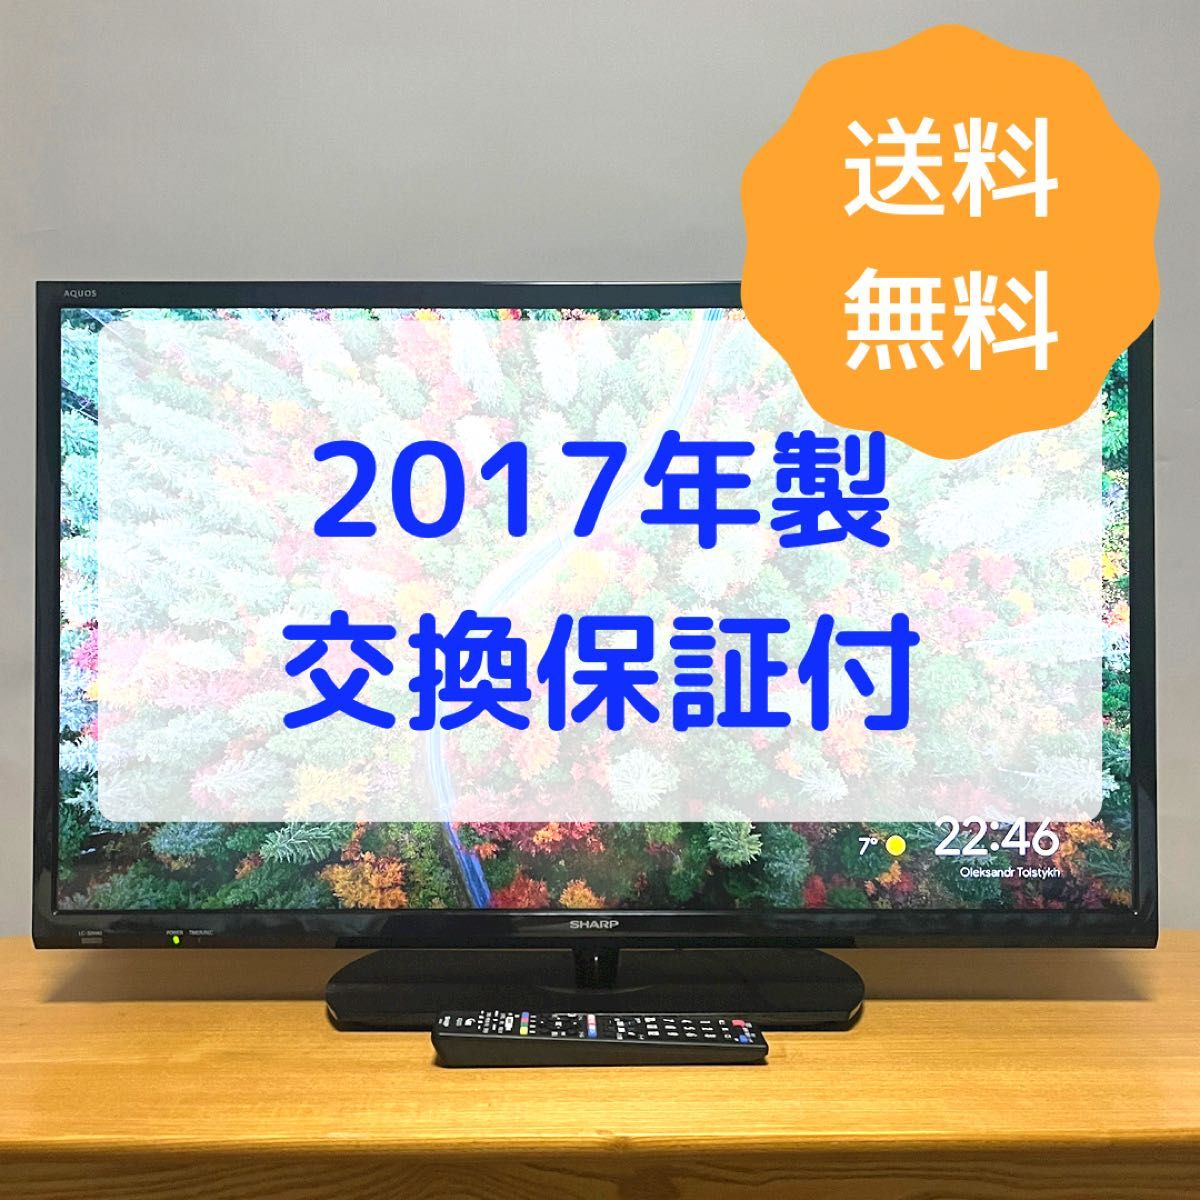 【008】SHARP AQUOS 32型液晶テレビ LC-32H40